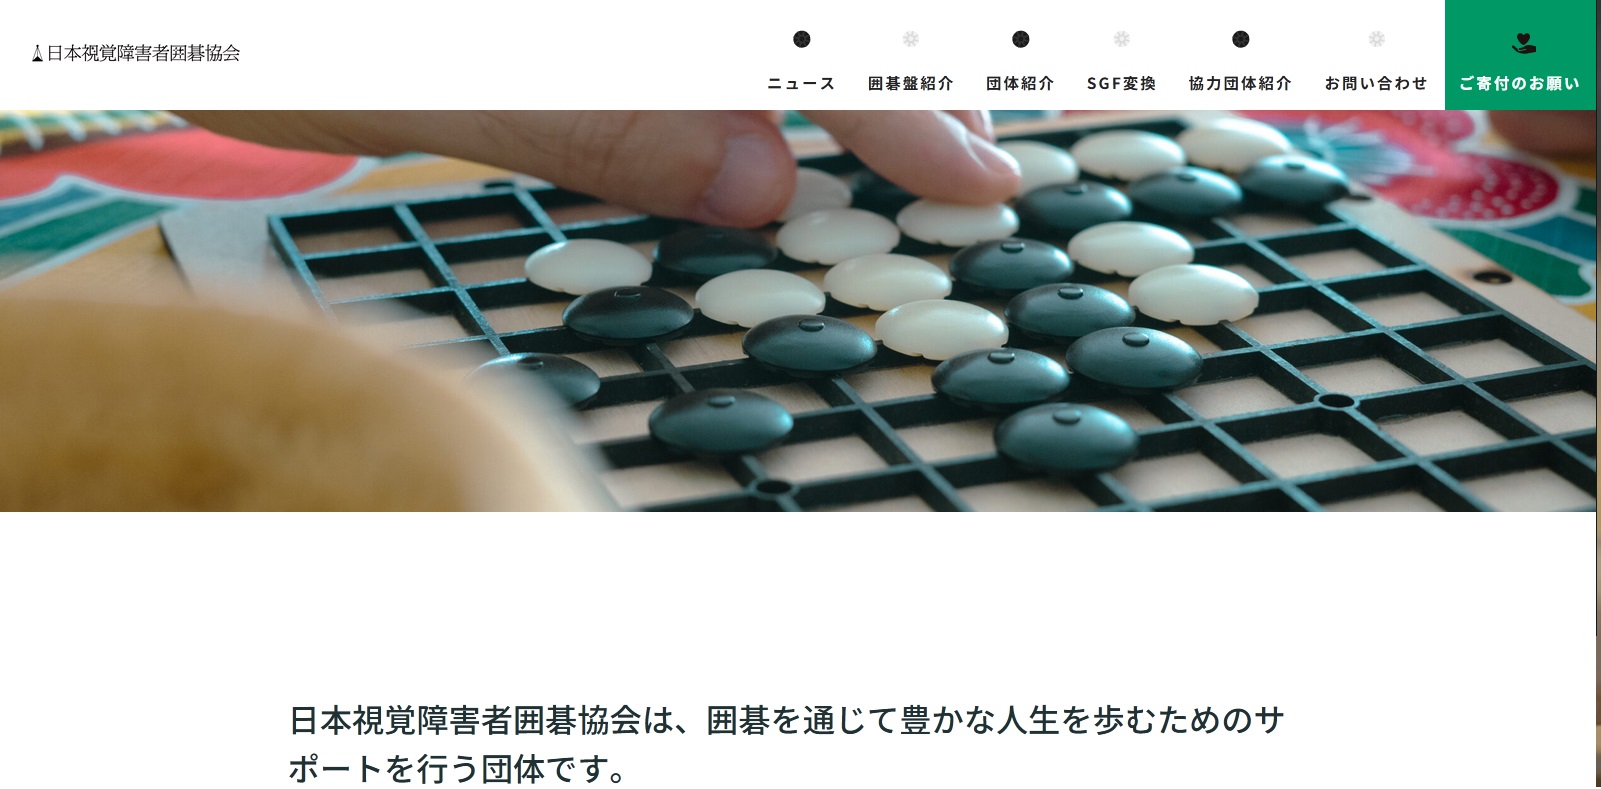 日本視覚障害者囲碁協会